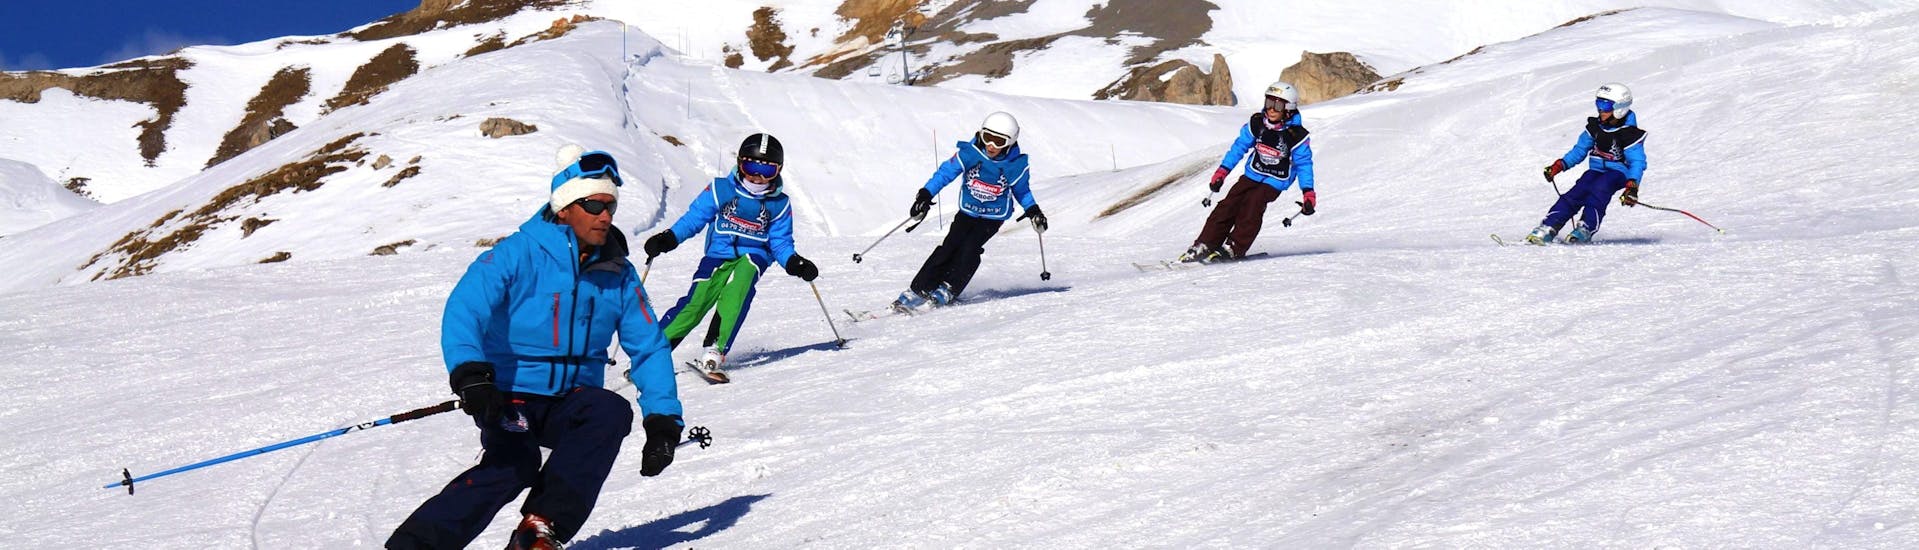 Des jeunes skieurs suivent leur moniteur de ski de l'école de ski Snocool à Sainte-Foy-Tarentaise le long d'une piste enneigée pendant leur Cours de ski Enfants "Pop 6" (10-17 ans) - Avancé.